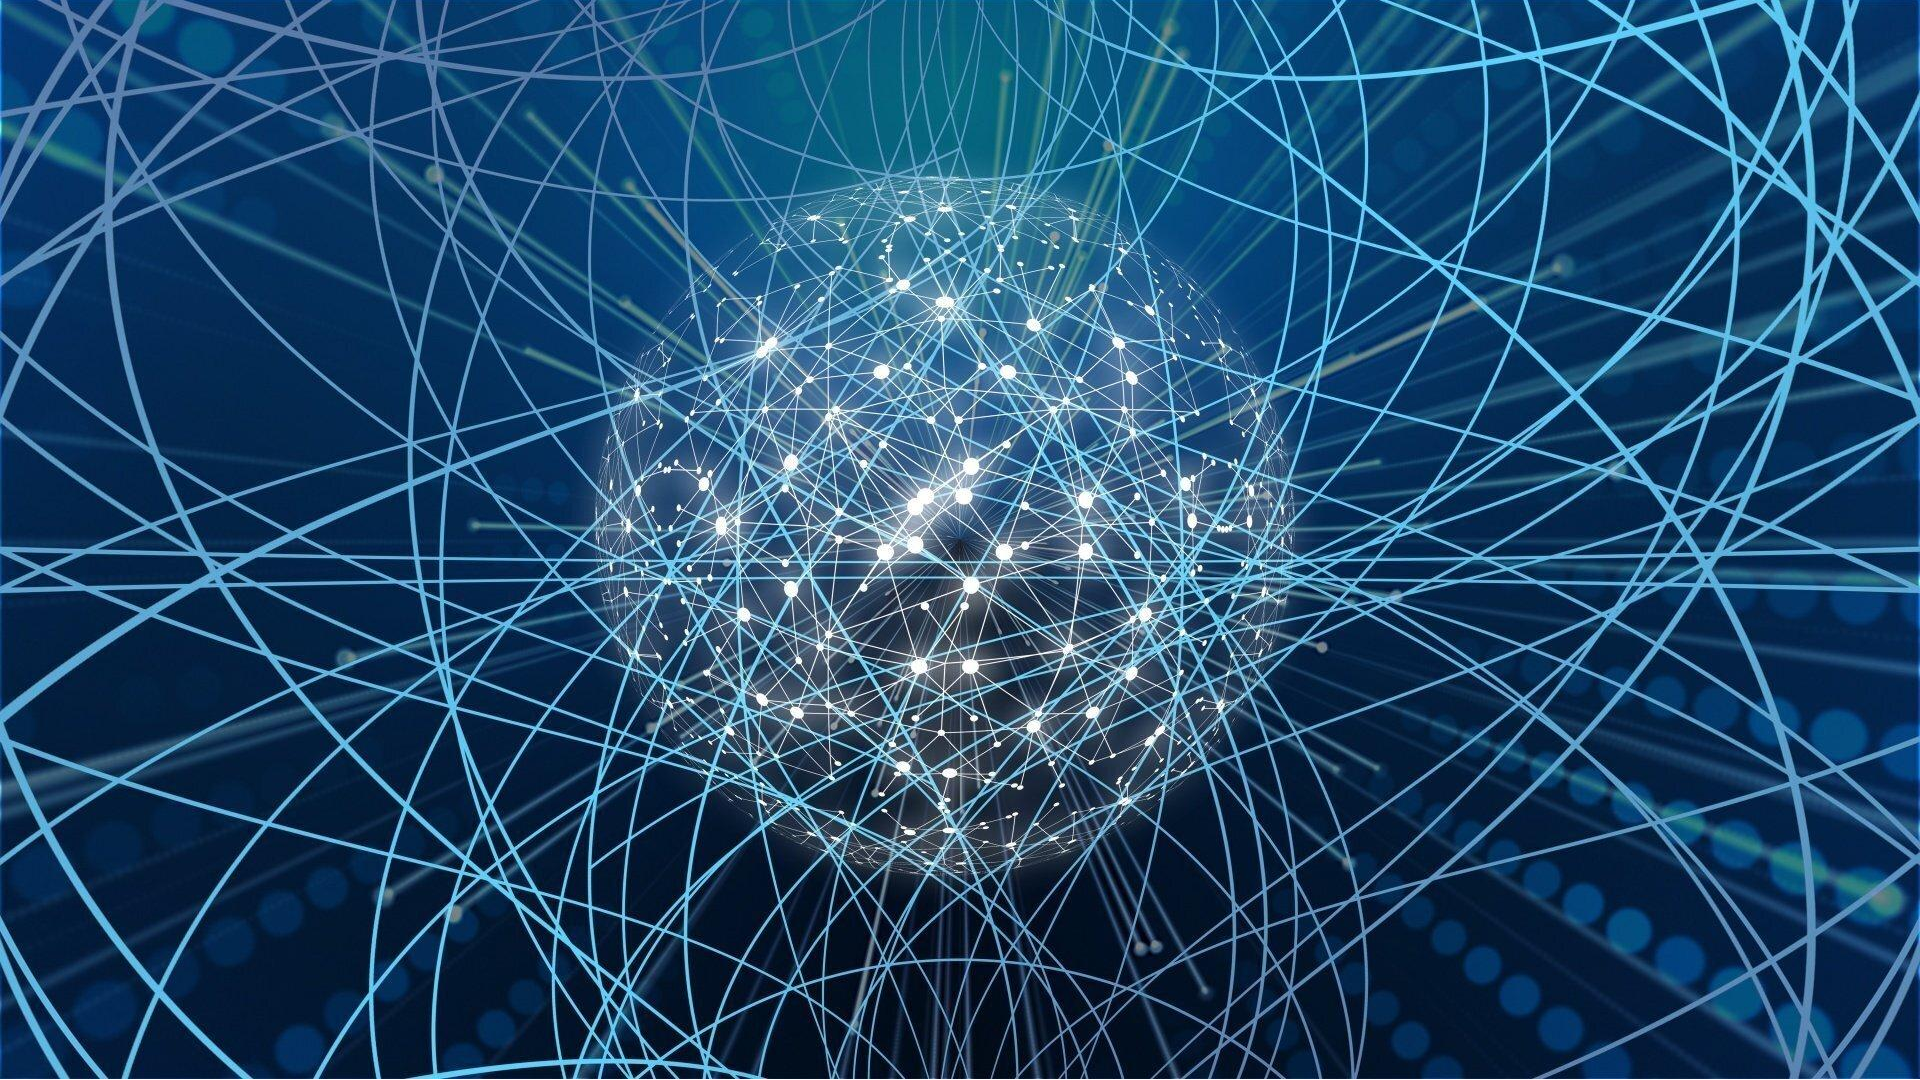 Ии геометрия. Нейронная сеть. Компьютерные нейронные сети. Искусственная нейронная сеть. Нейронные сети искусственный интеллект.